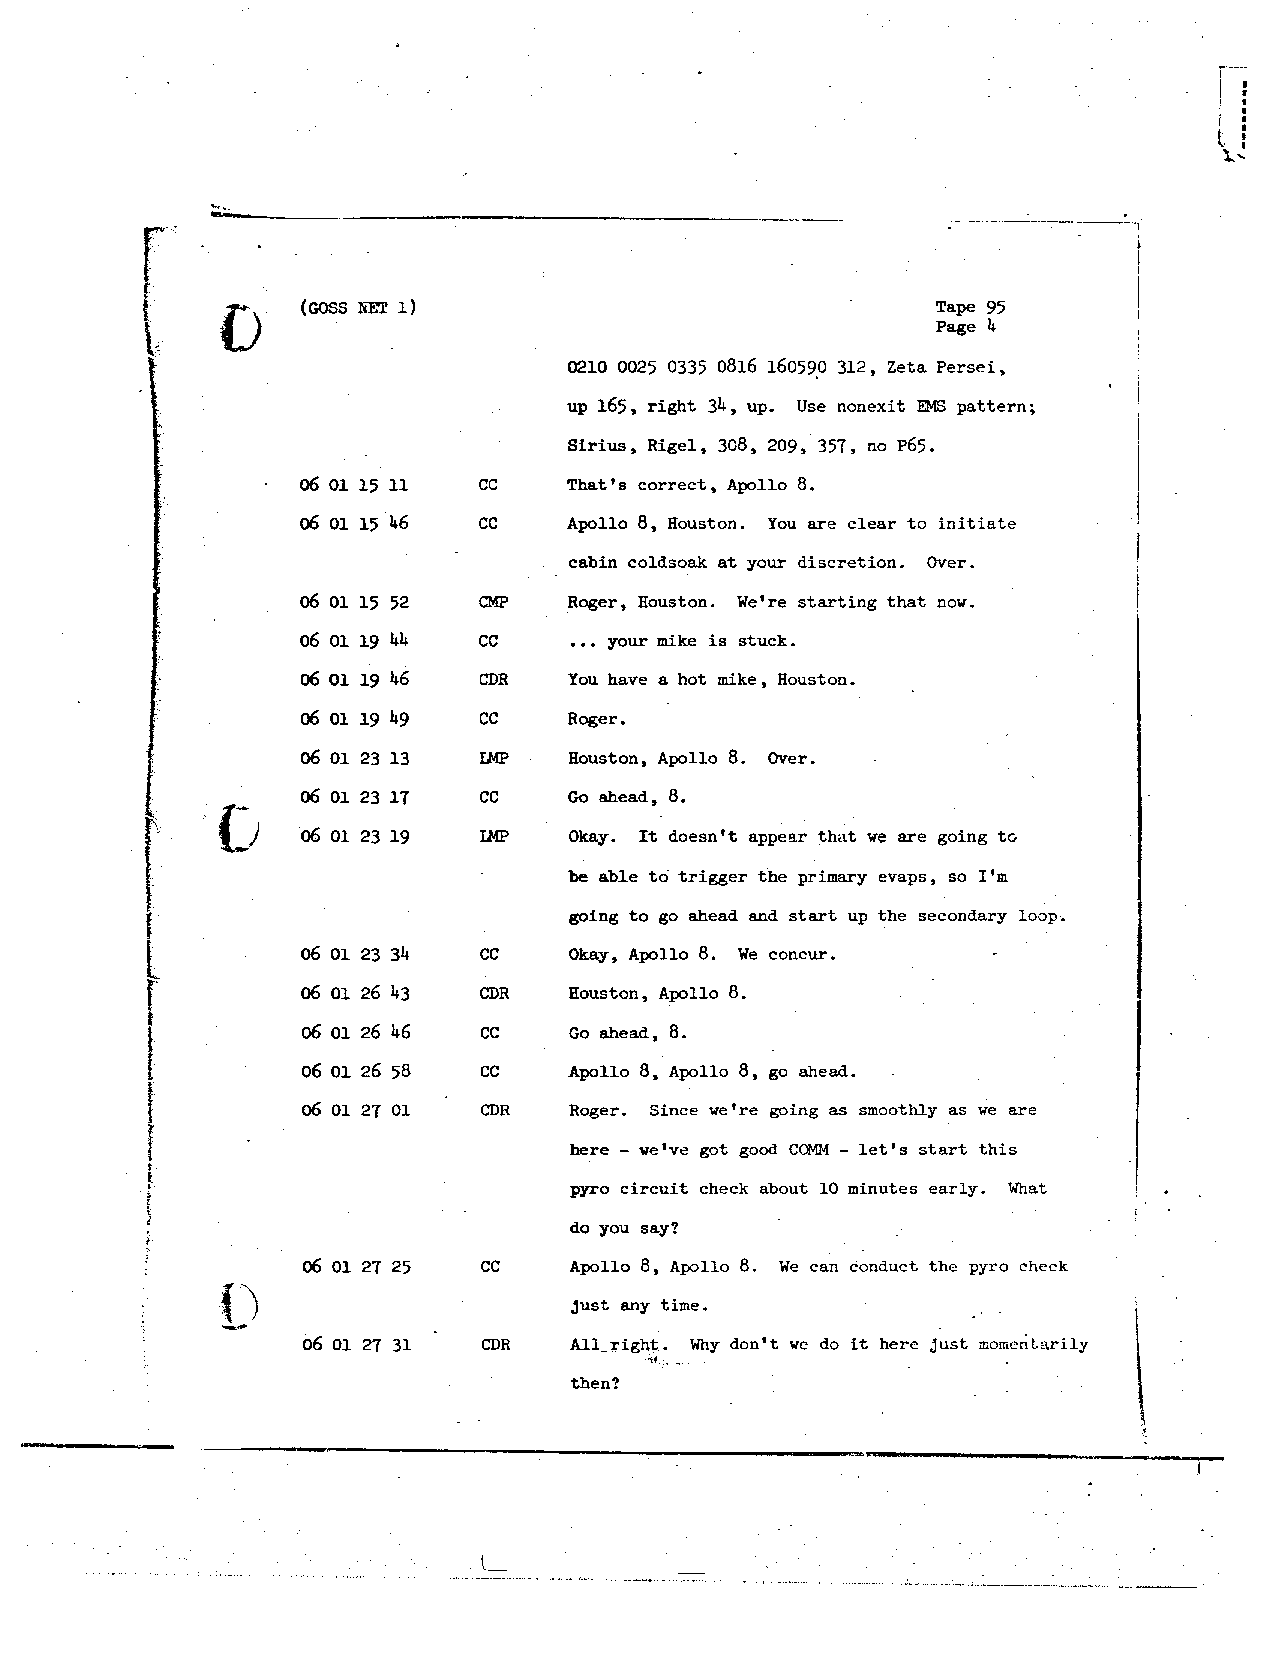 Page 750 of Apollo 8’s original transcript